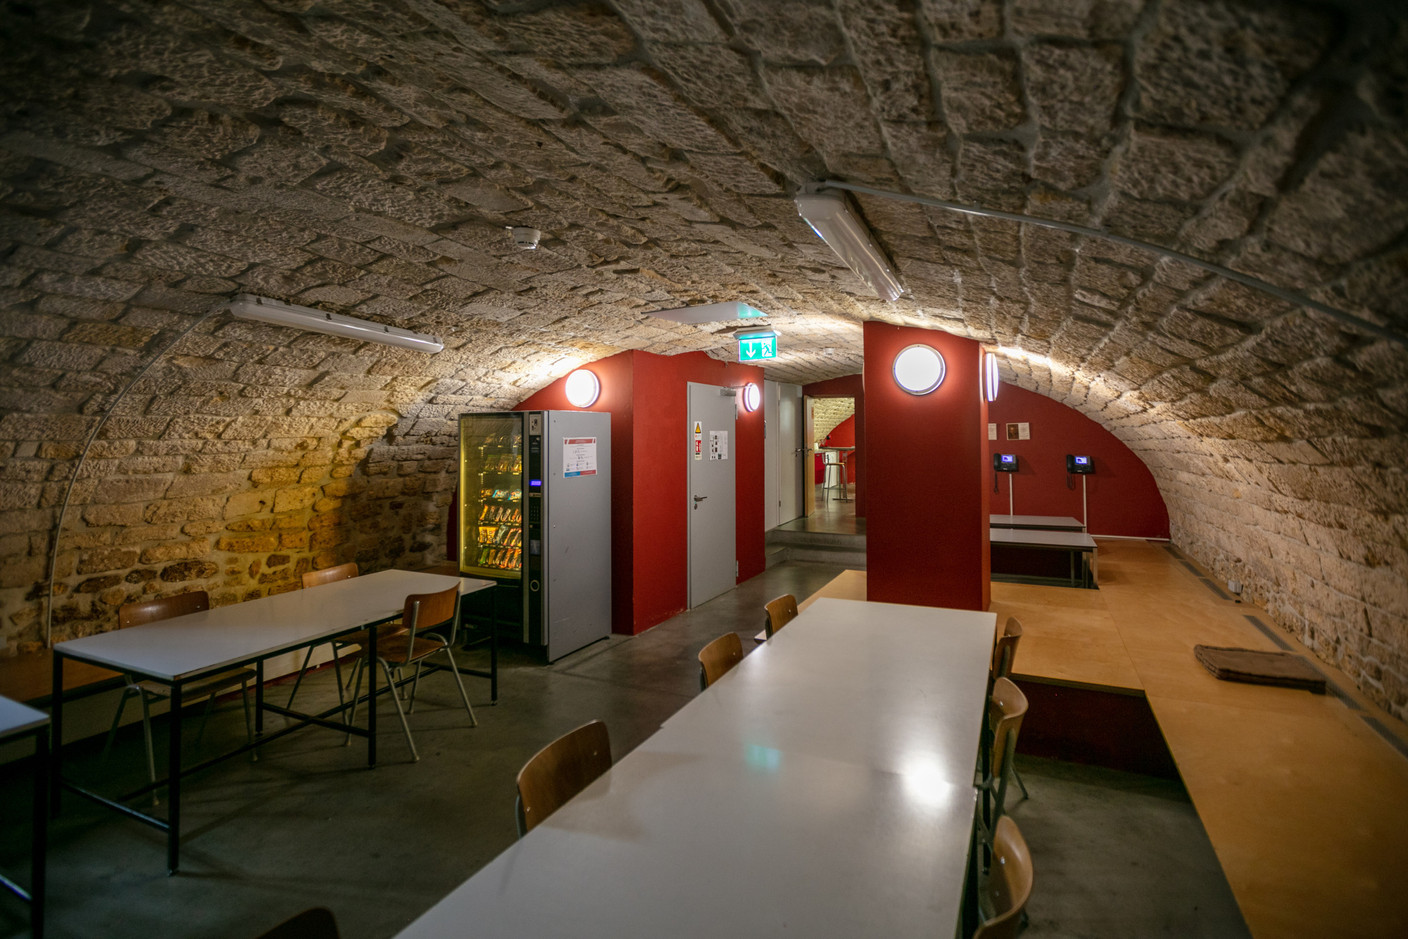 La cave voûtée, où le vin était autrefois stocké, sert aujourd’hui d’espace d’étude. (Photo: Romain Gamba/Maison Moderne)